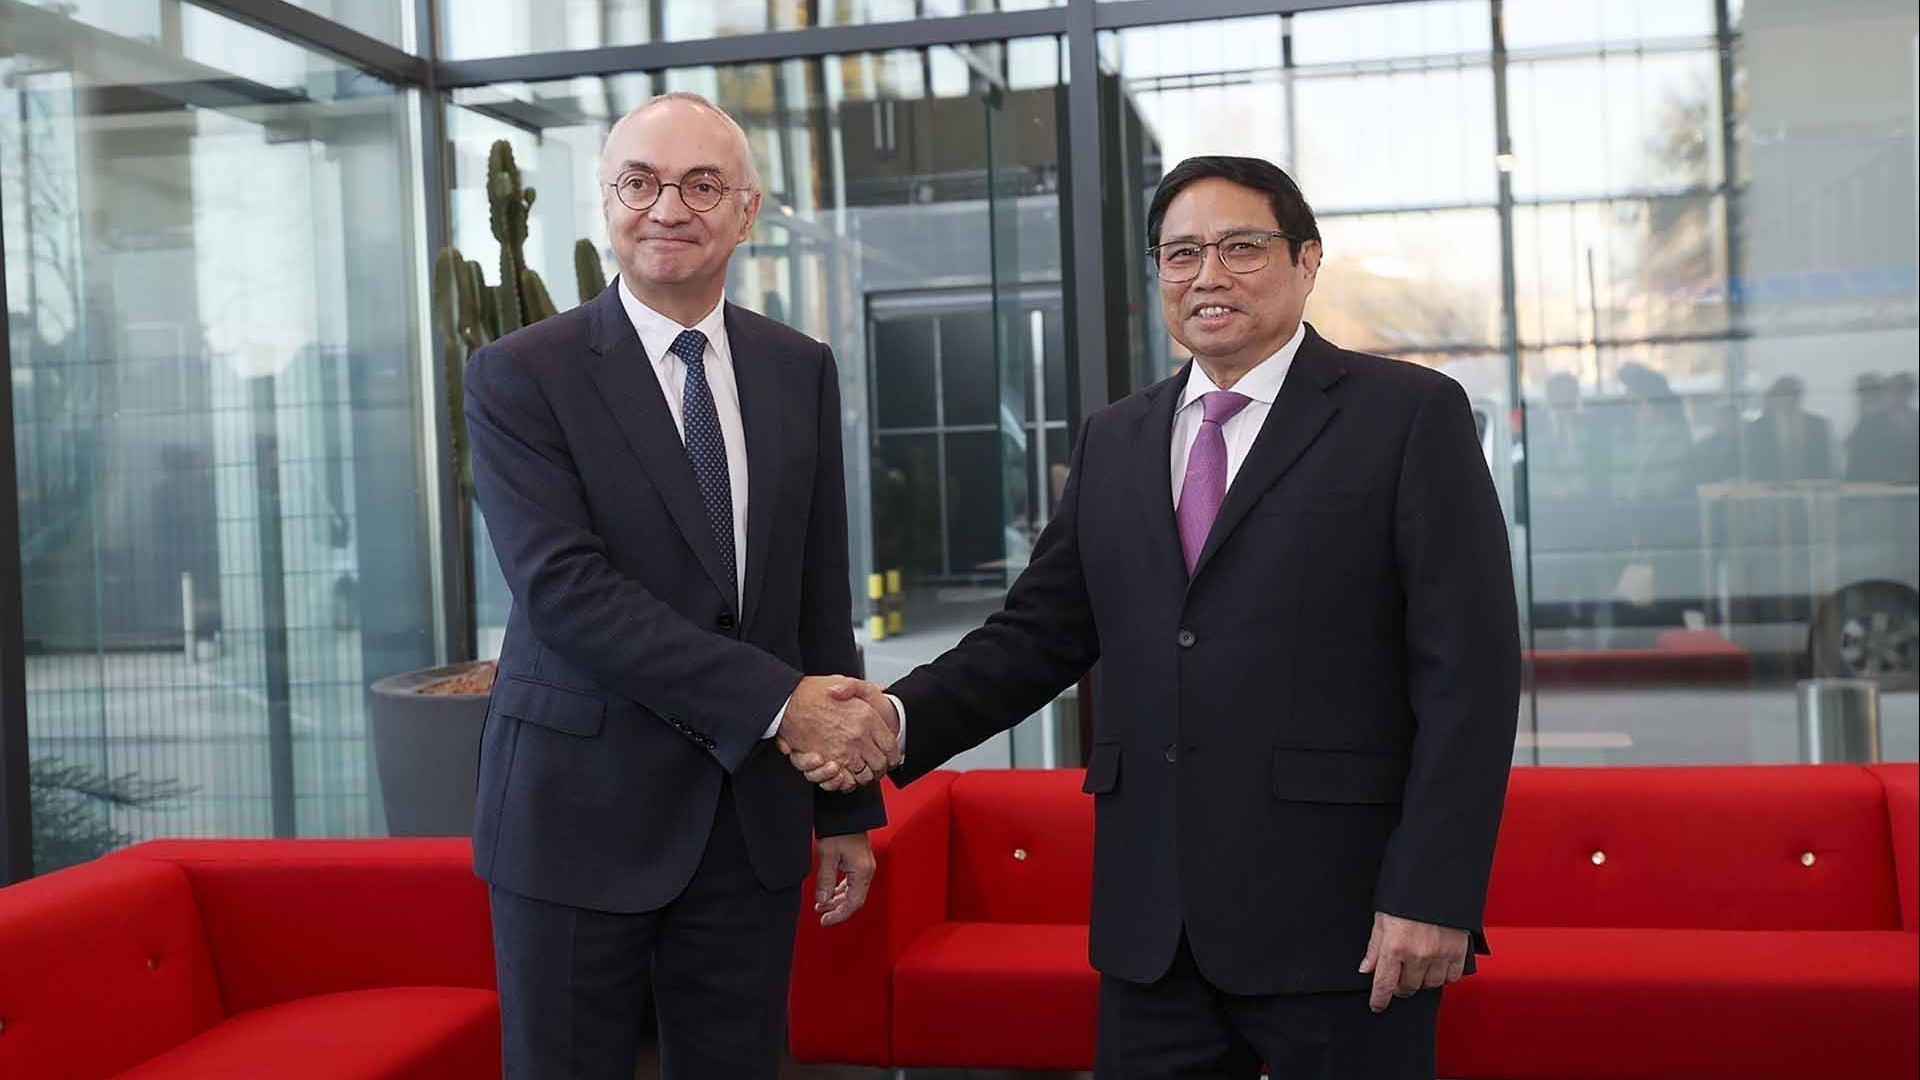 Tăng cường thúc đẩy hợp tác khoa học công nghệ giữa Việt Nam và Bỉ